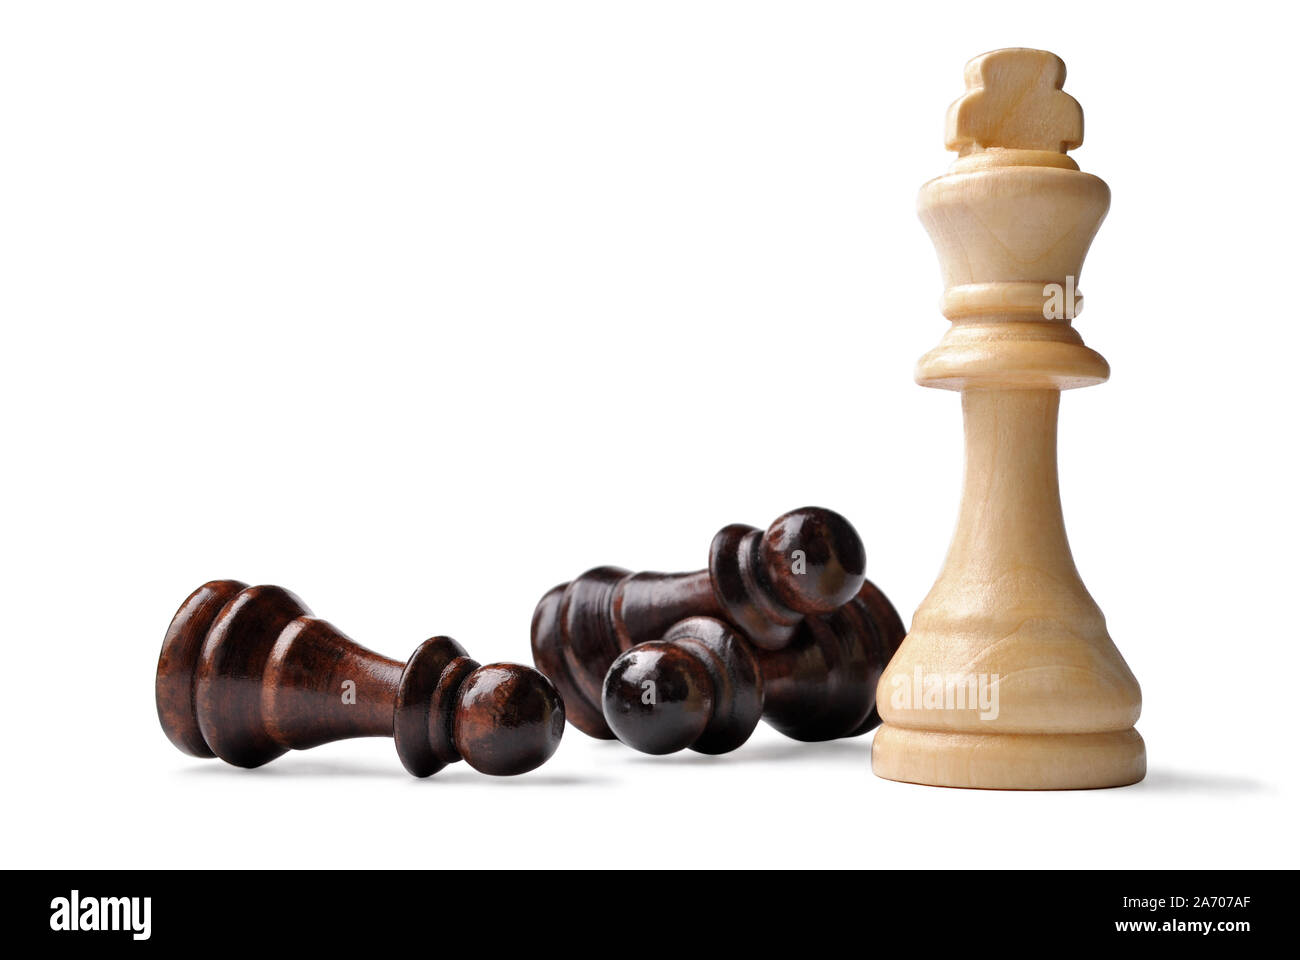 En bois de couleur claire King chess piece debout entouré par l'opposition des pions couchés sur le côté dans un jeu de stratégie, on white Banque D'Images